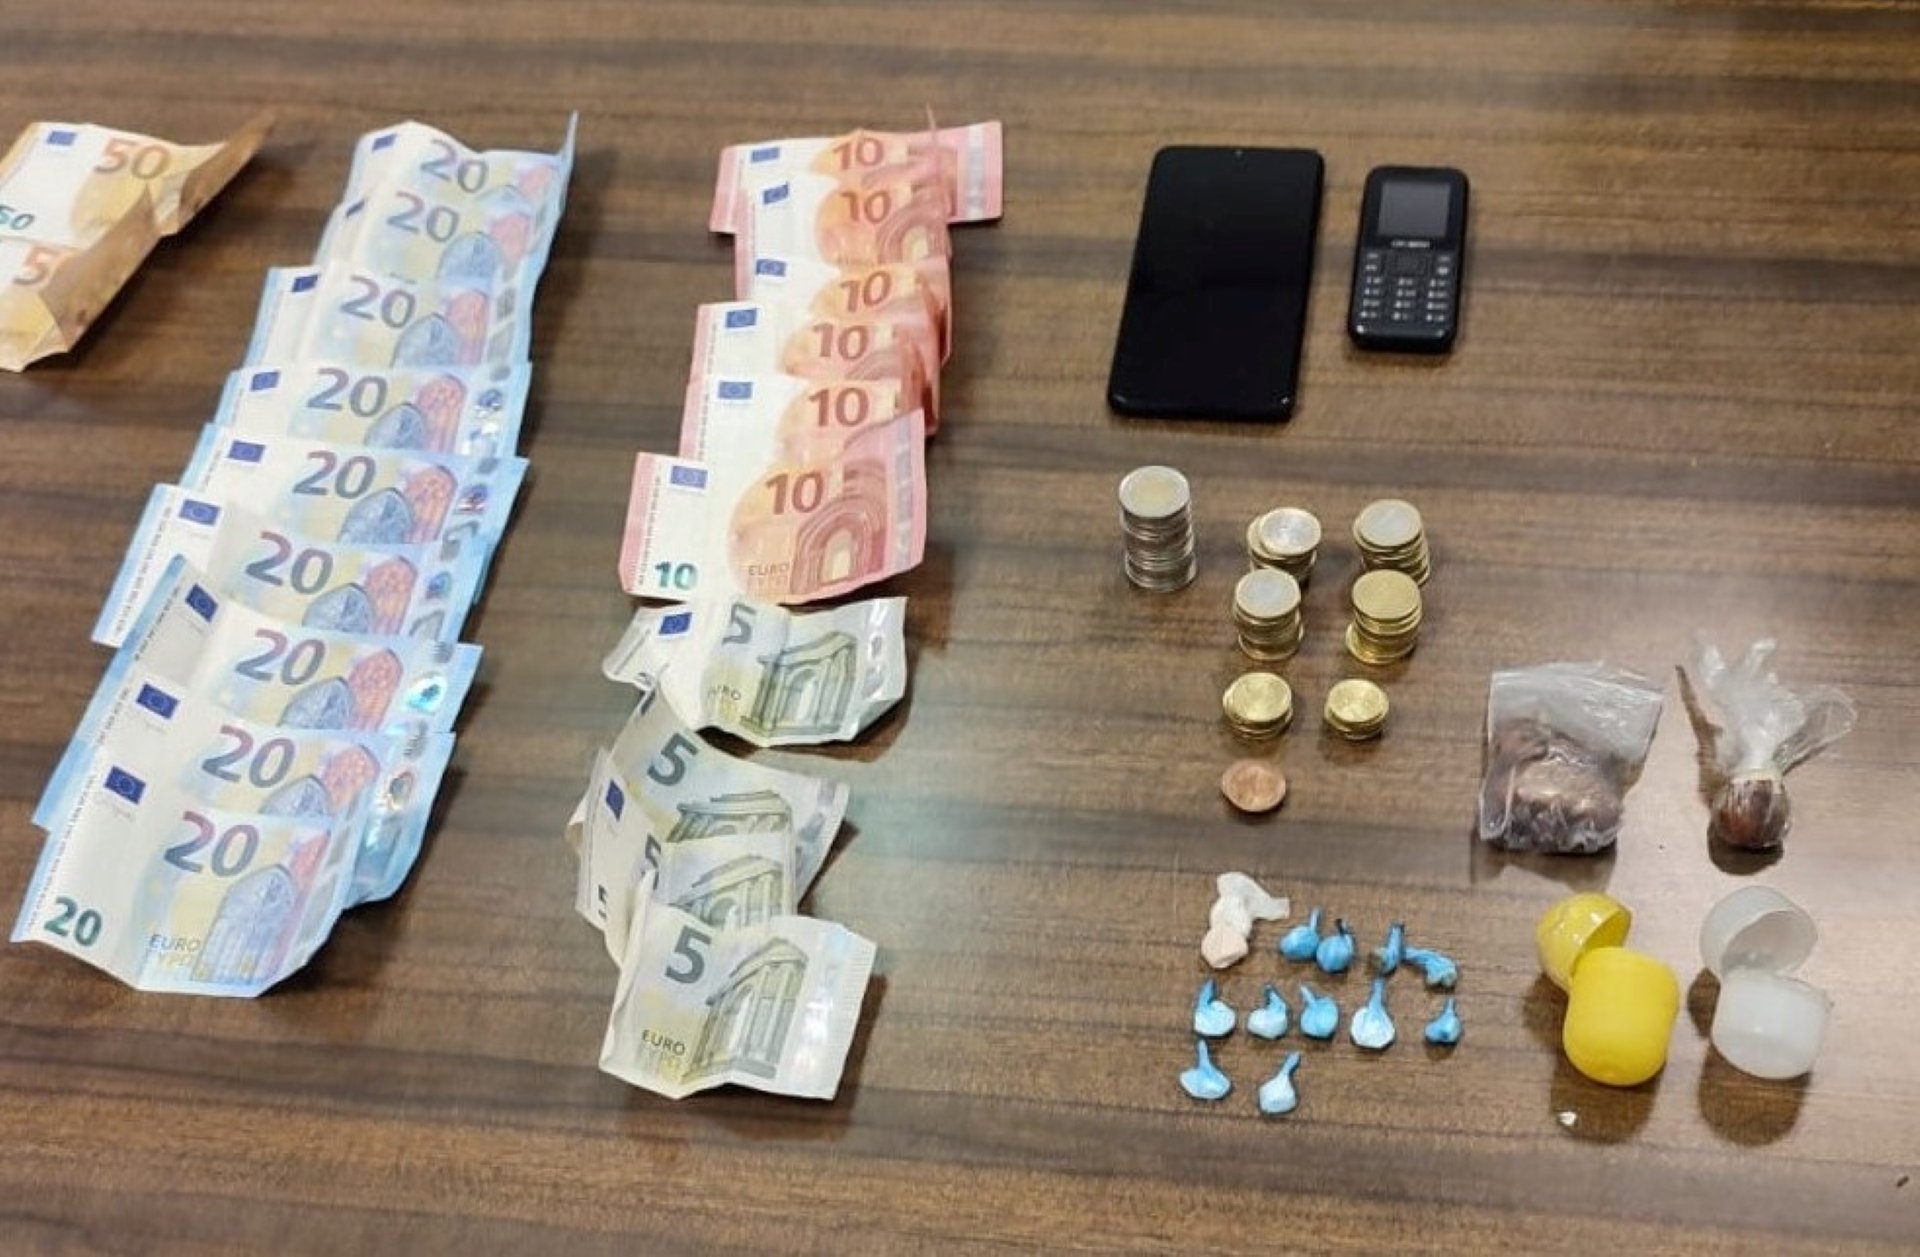 Els diners i les drogues confiscades per la Policia Nacional a Palma (Mallorca) / POLICIA NACIONAL